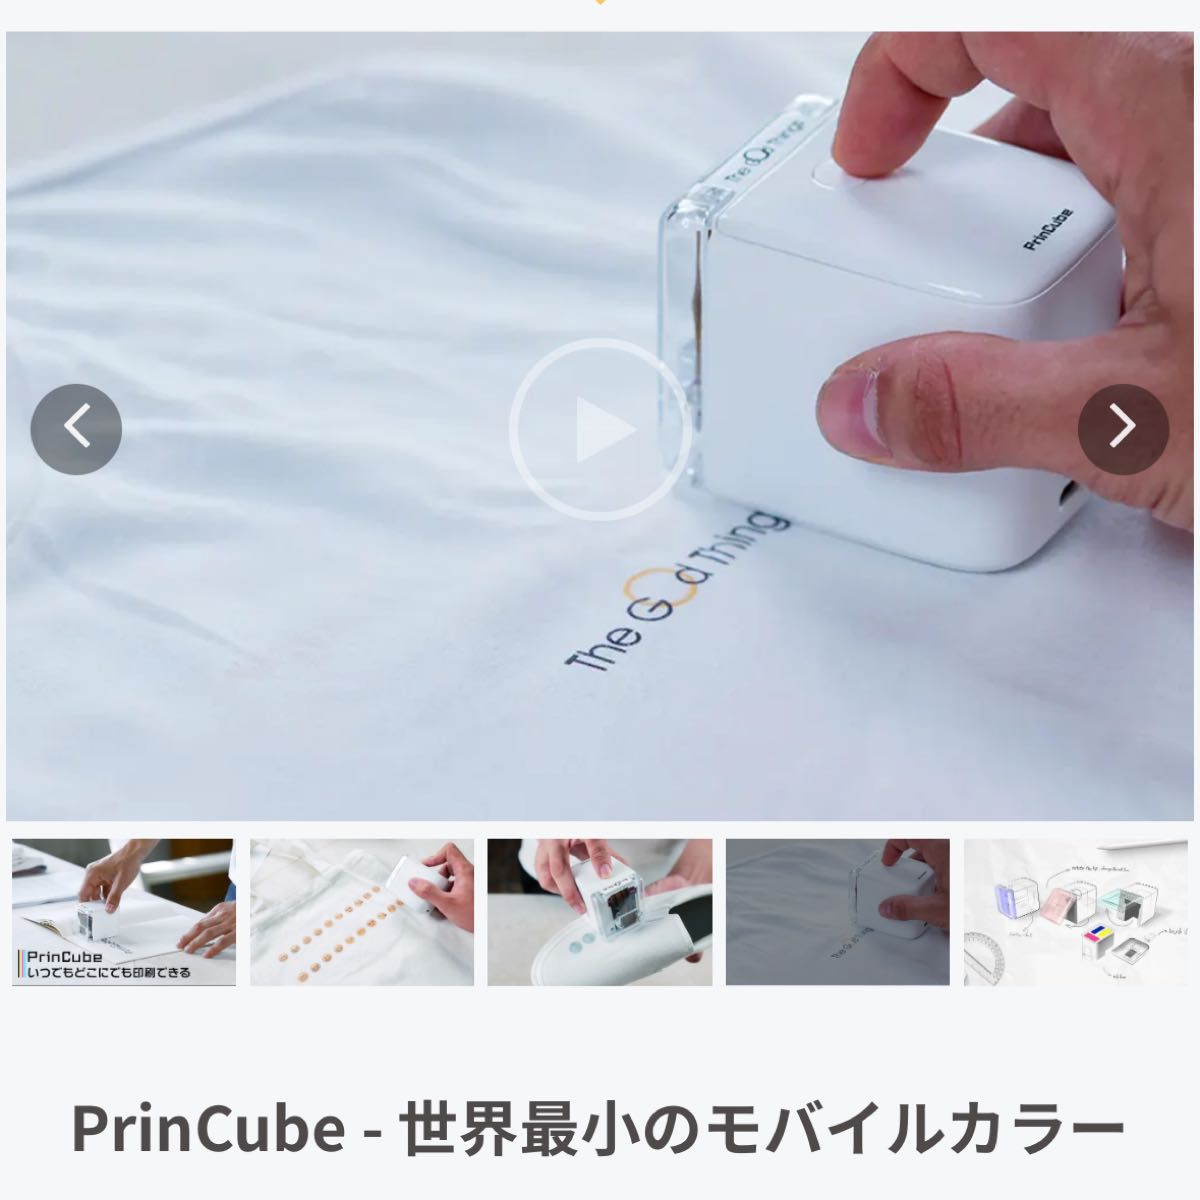 PrinCube 世界最小のモバイルカラープリンター